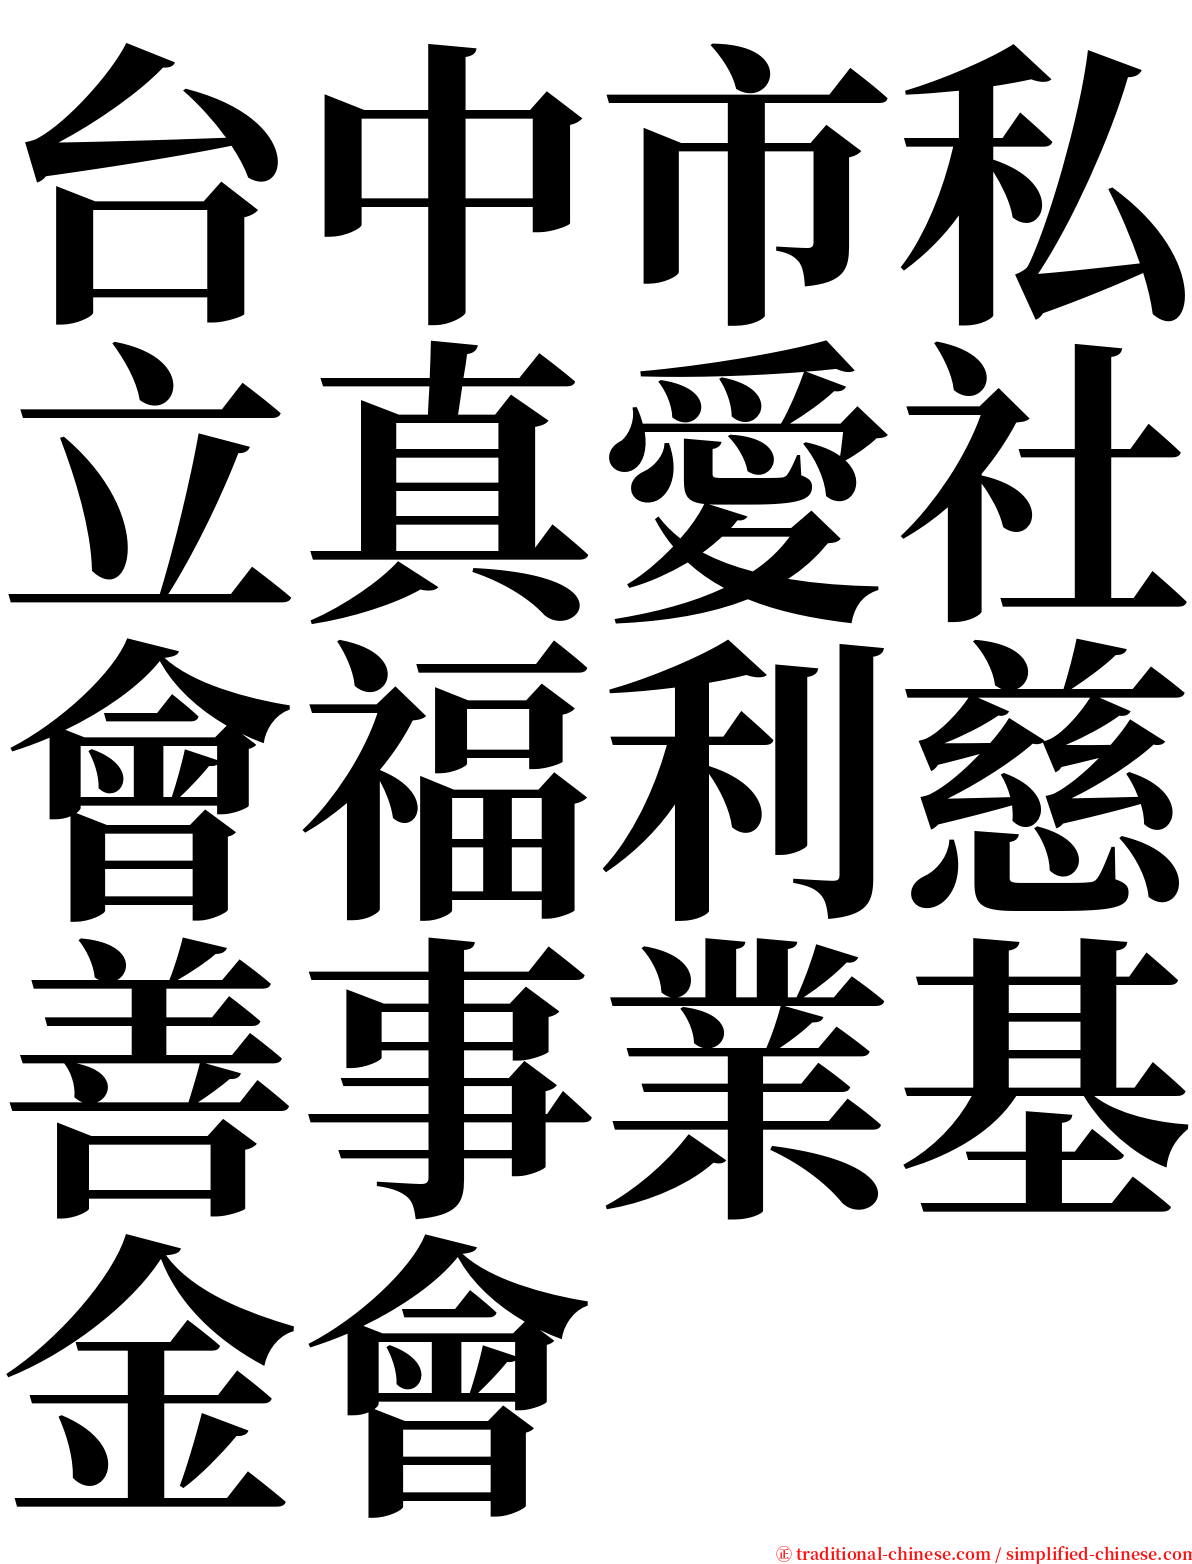 台中市私立真愛社會福利慈善事業基金會 serif font